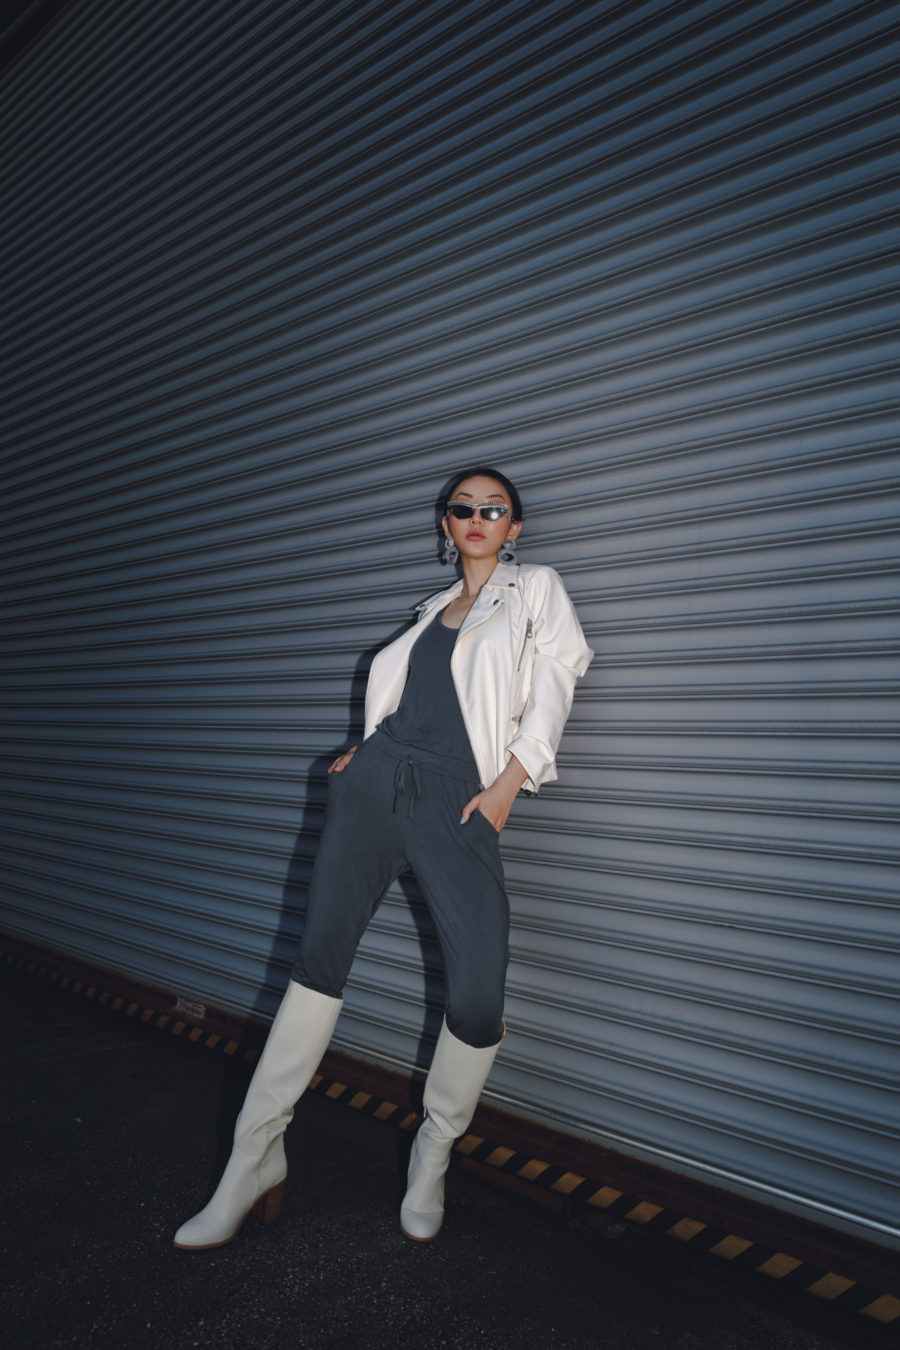 jessica wang wears white knee high boots to dress up loungewear // Jessica Wang - Notjessfashion.com